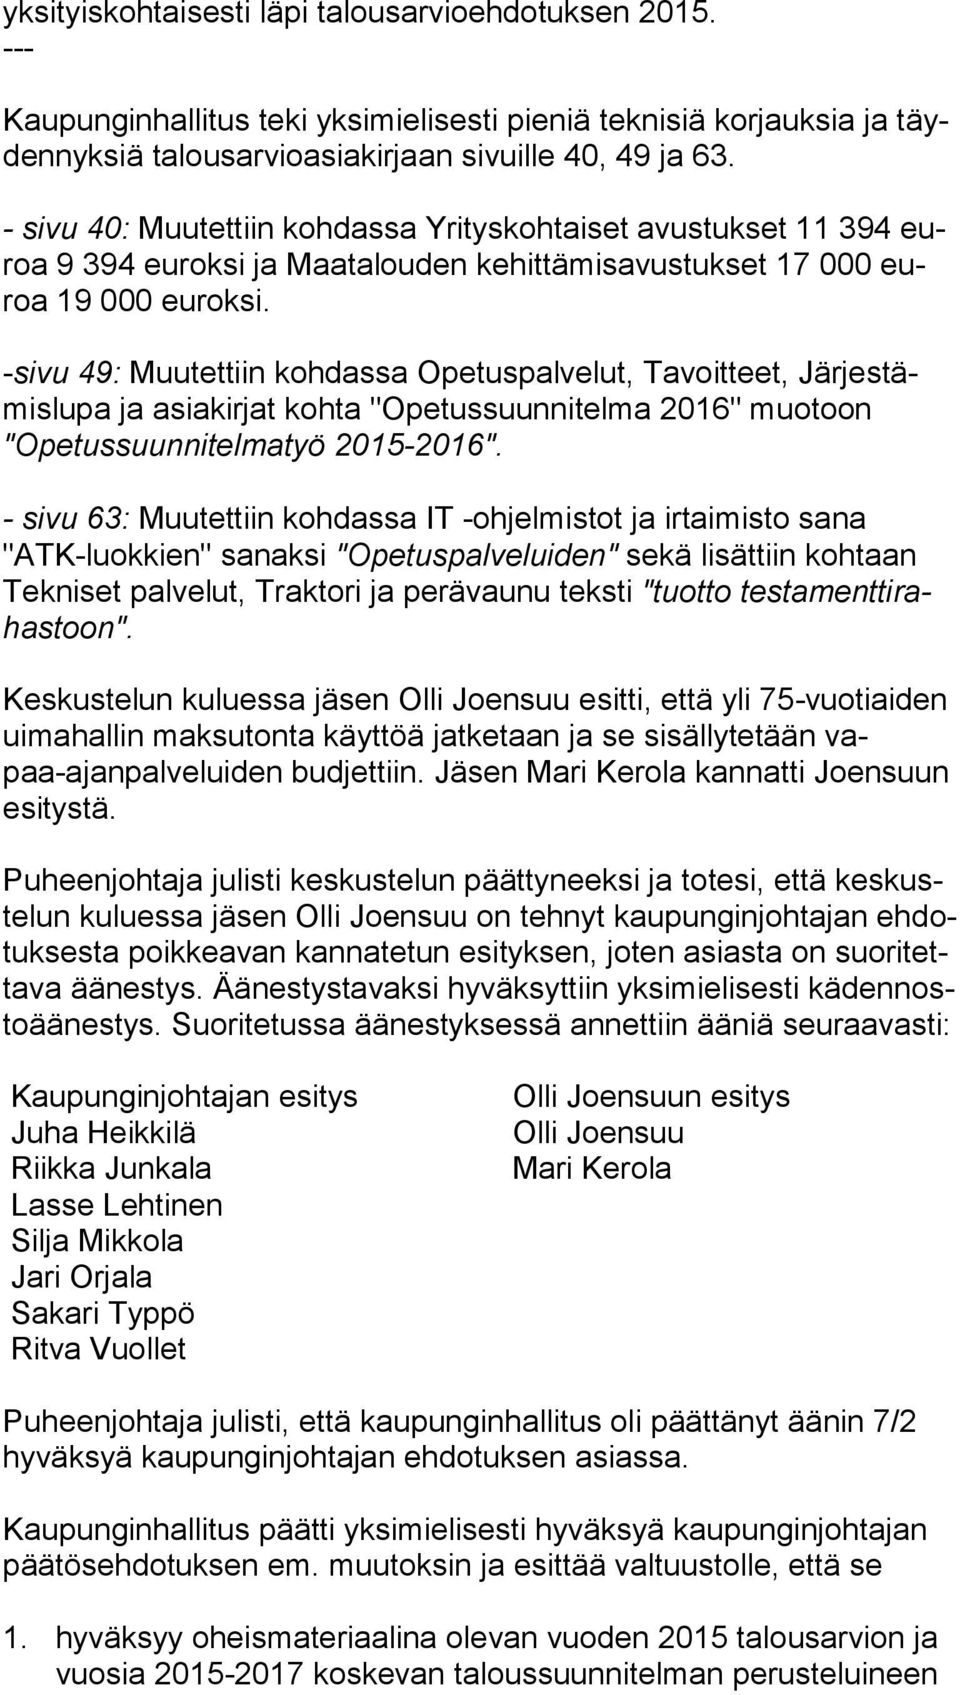 -sivu 49: Muutettiin kohdassa Opetuspalvelut, Tavoitteet, Jär jes tämis lu pa ja asiakirjat kohta "Opetussuunnitelma 2016" muotoon "Ope tus suun ni tel ma työ 2015-2016".